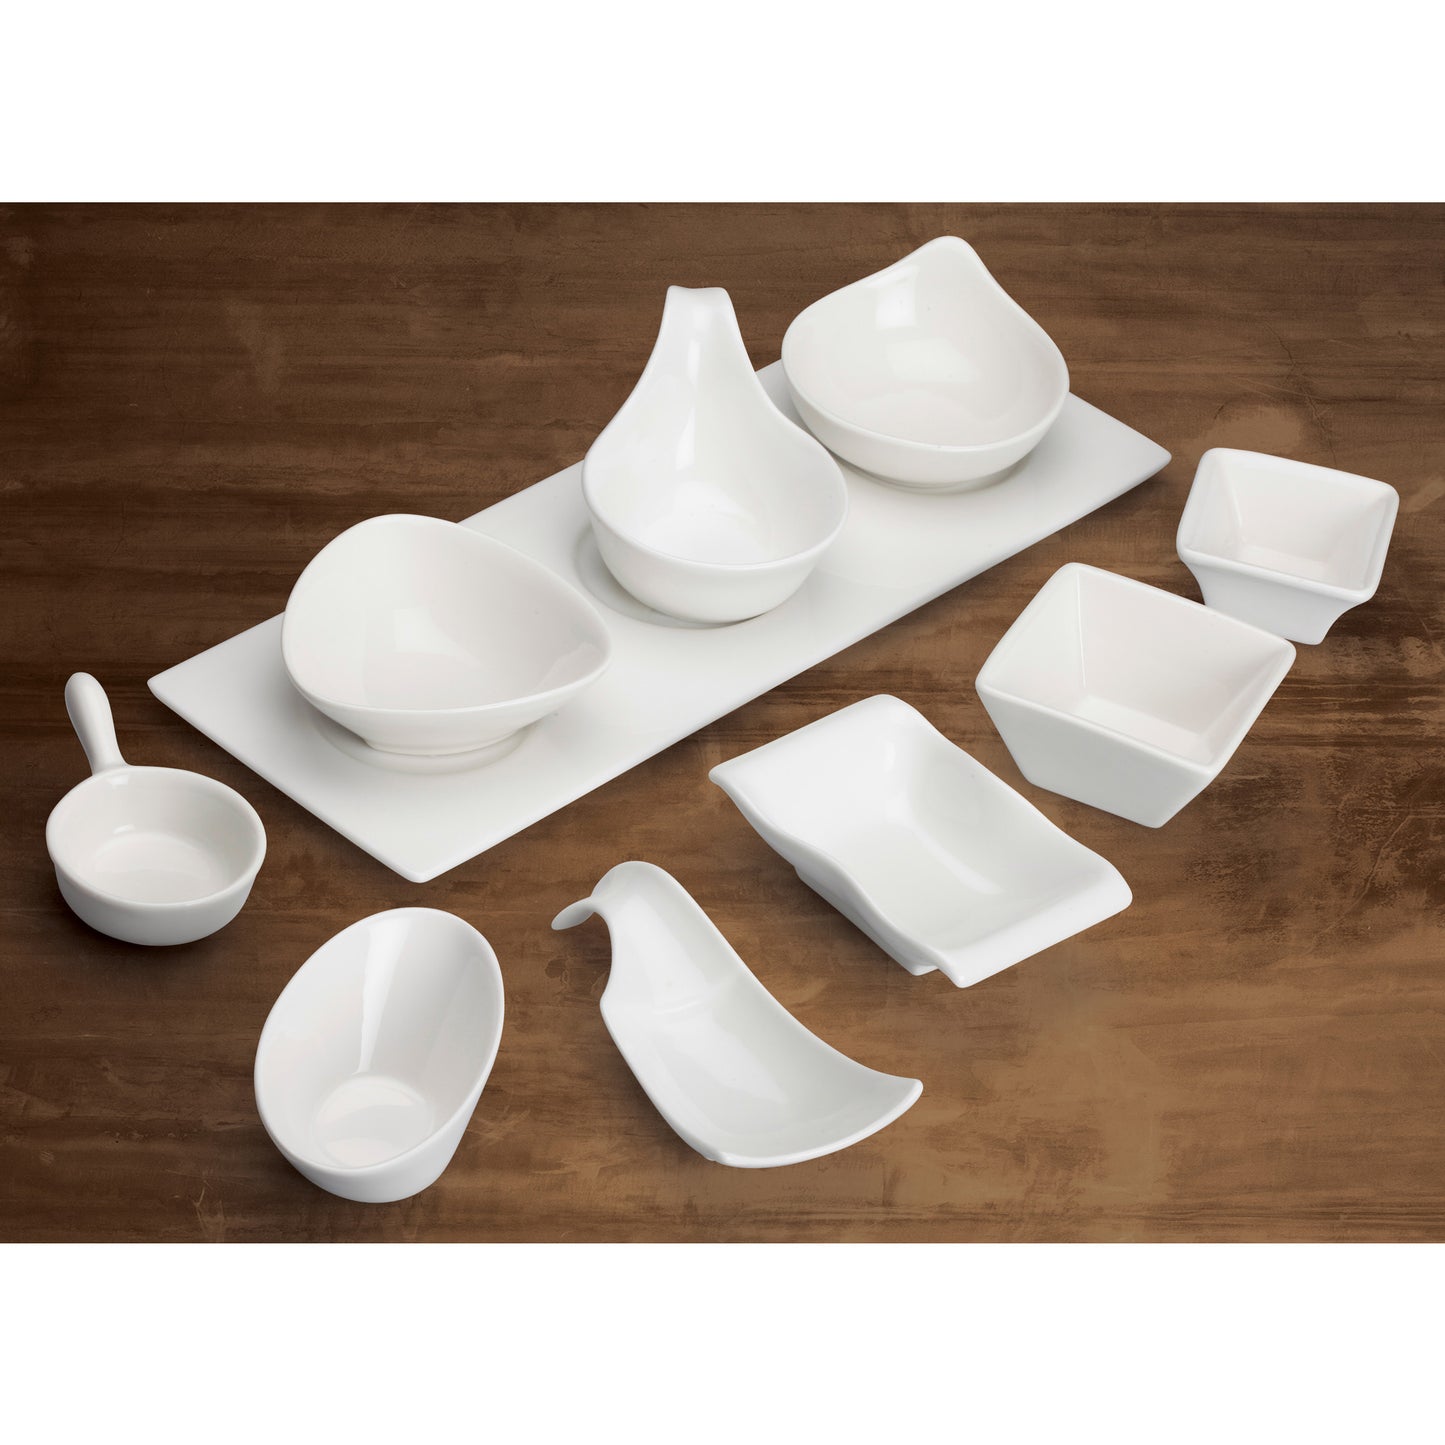 WDP021-105 - 3-1/8" Porcelain Square Mini Bowl, Bright White, 36 pcs/case